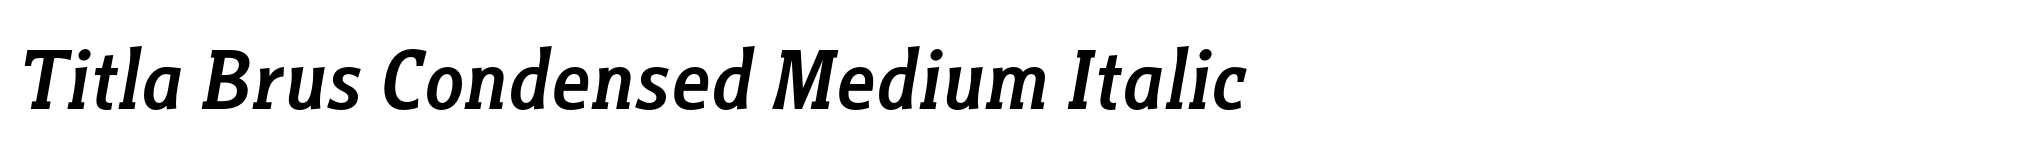 Titla Brus Condensed Medium Italic image